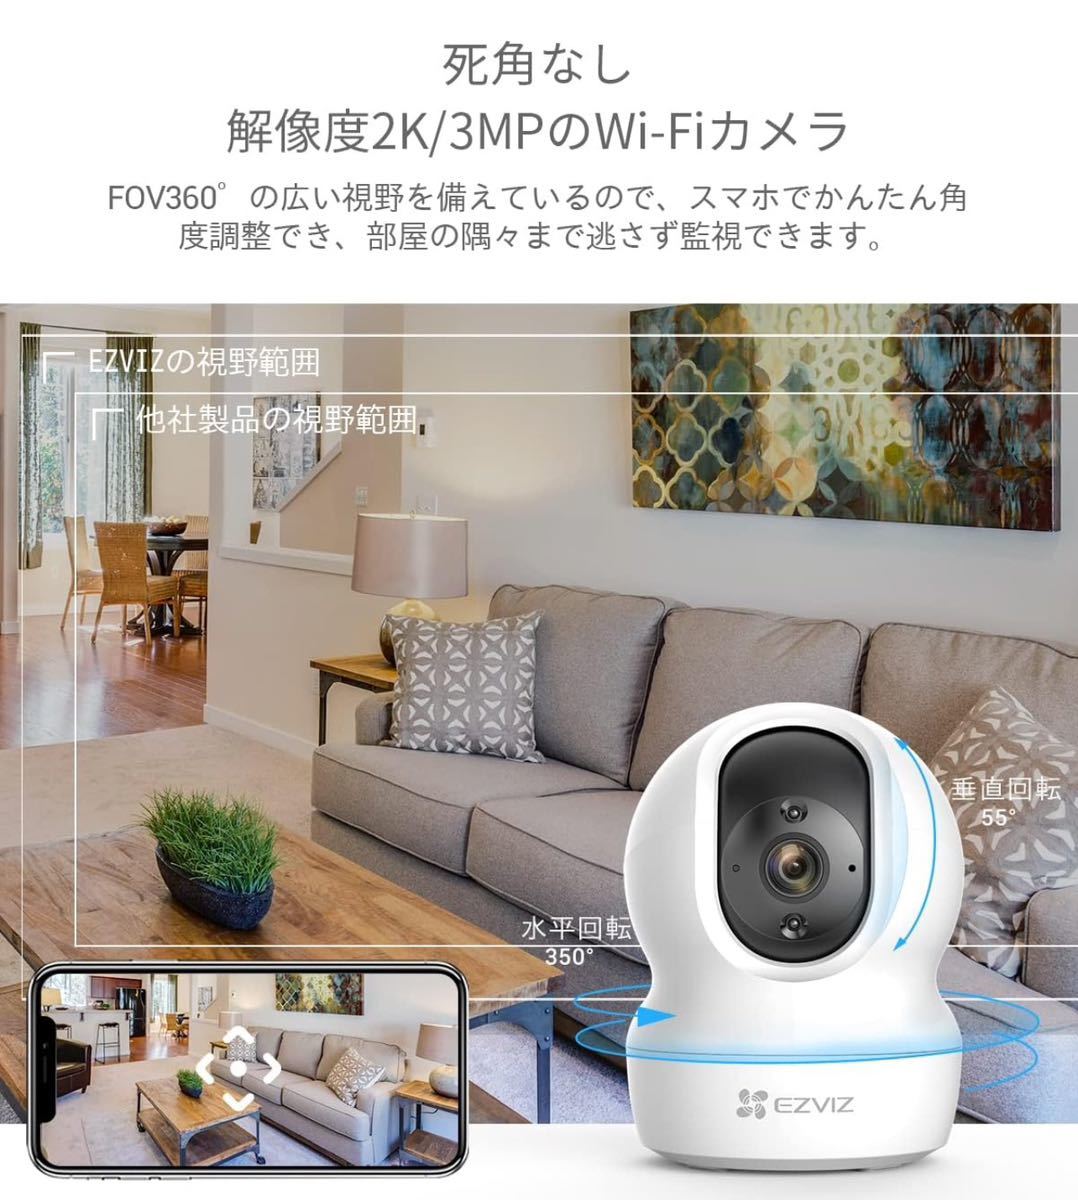 EZVIZ 防犯カメラ 2K/3MP 屋内 監視カメラ ネットワークカメラ取付簡単 スリープモード H.265 2.4GHzのみWiFi対応 CP1_画像2